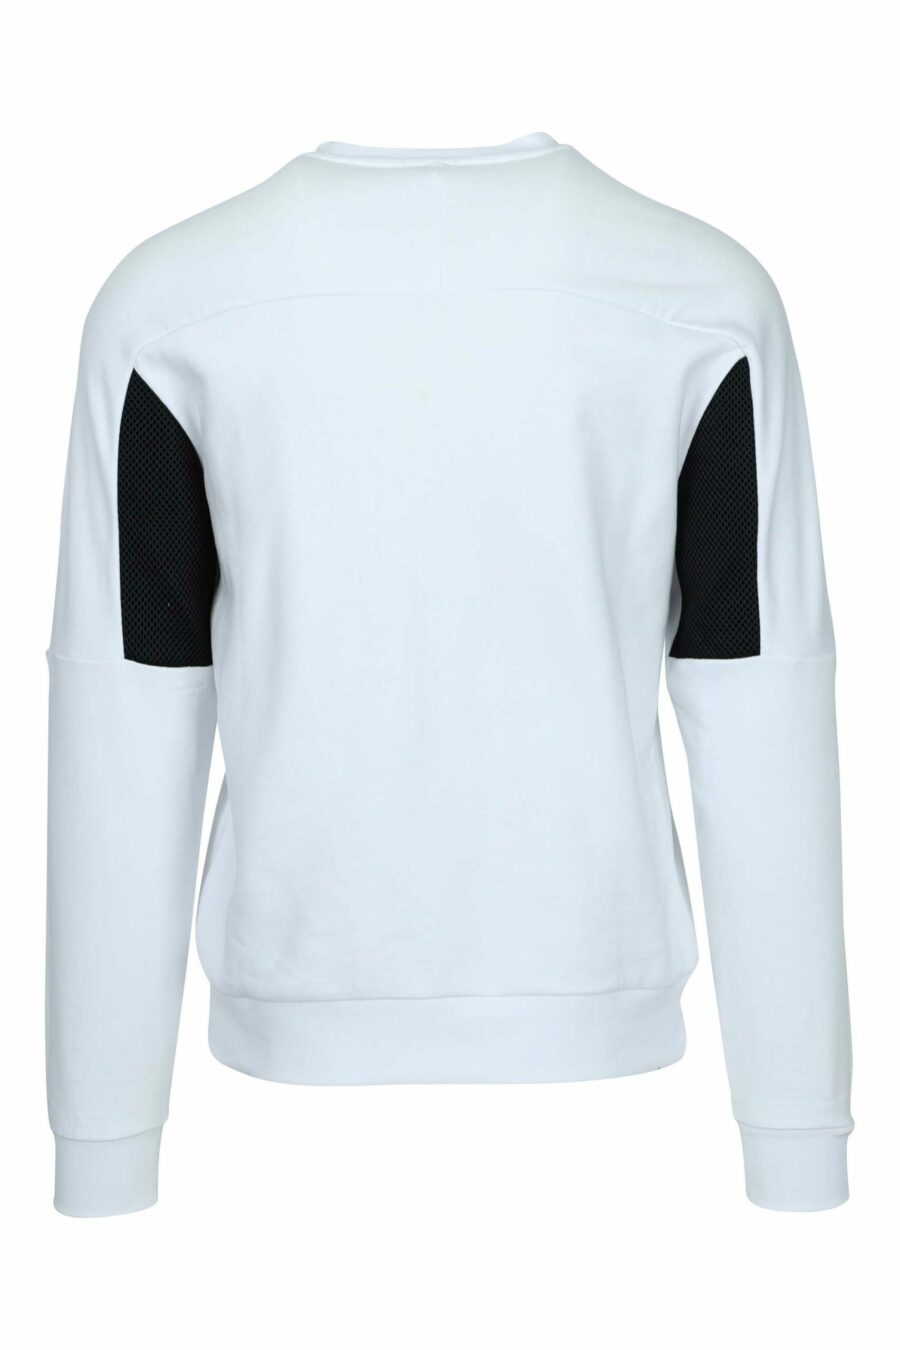 Weißes Sweatshirt mit "lux identity" Minilogo auf einfarbigem Band - 8058947443338 1 skaliert